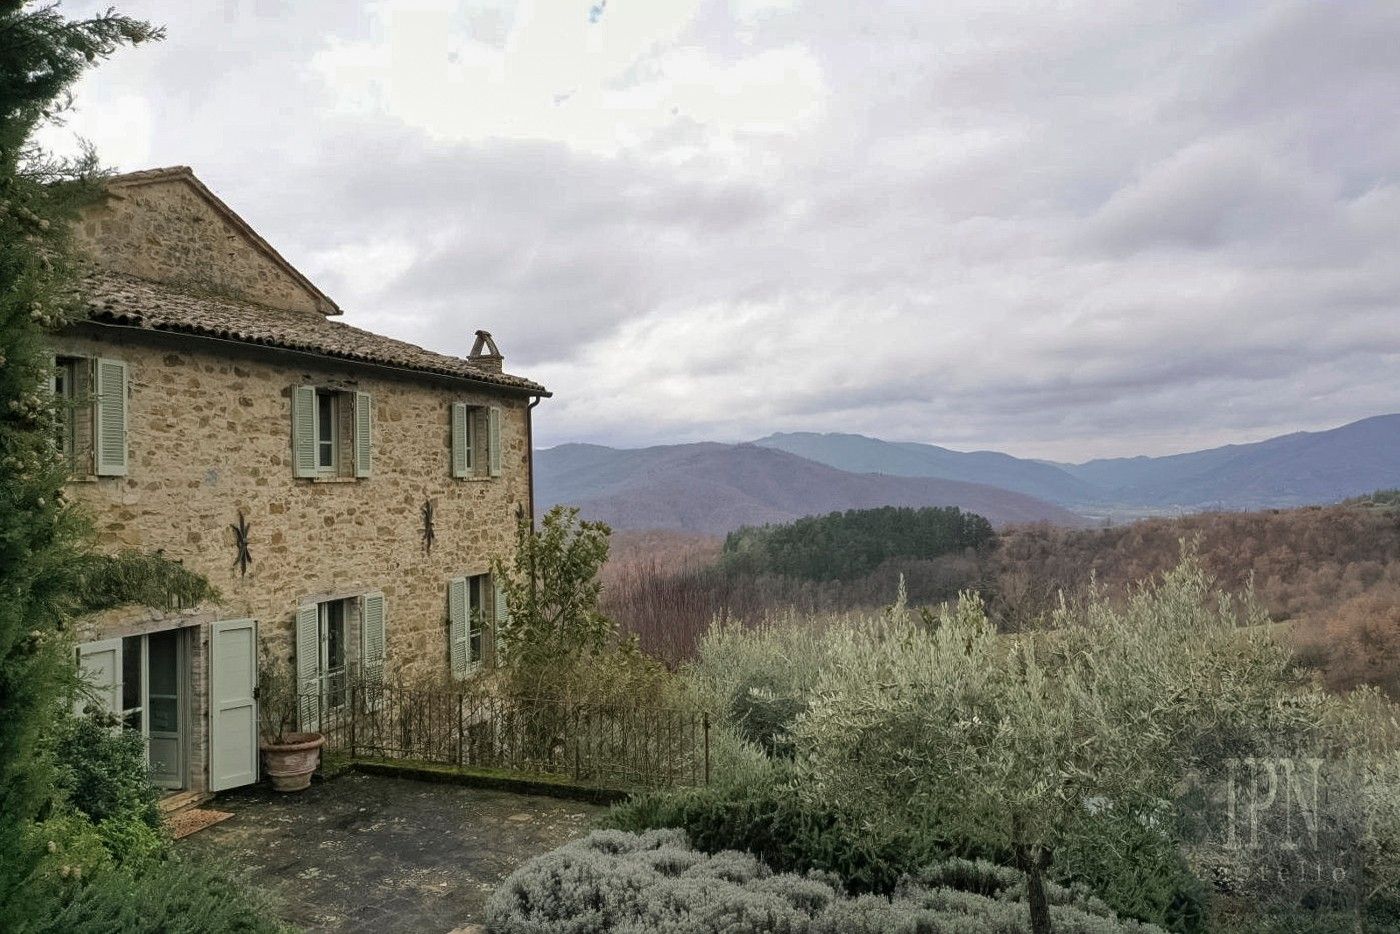 Zdjęcia Umbria w najlepszym wydaniu: Zabytkowy dom pełen charakteru